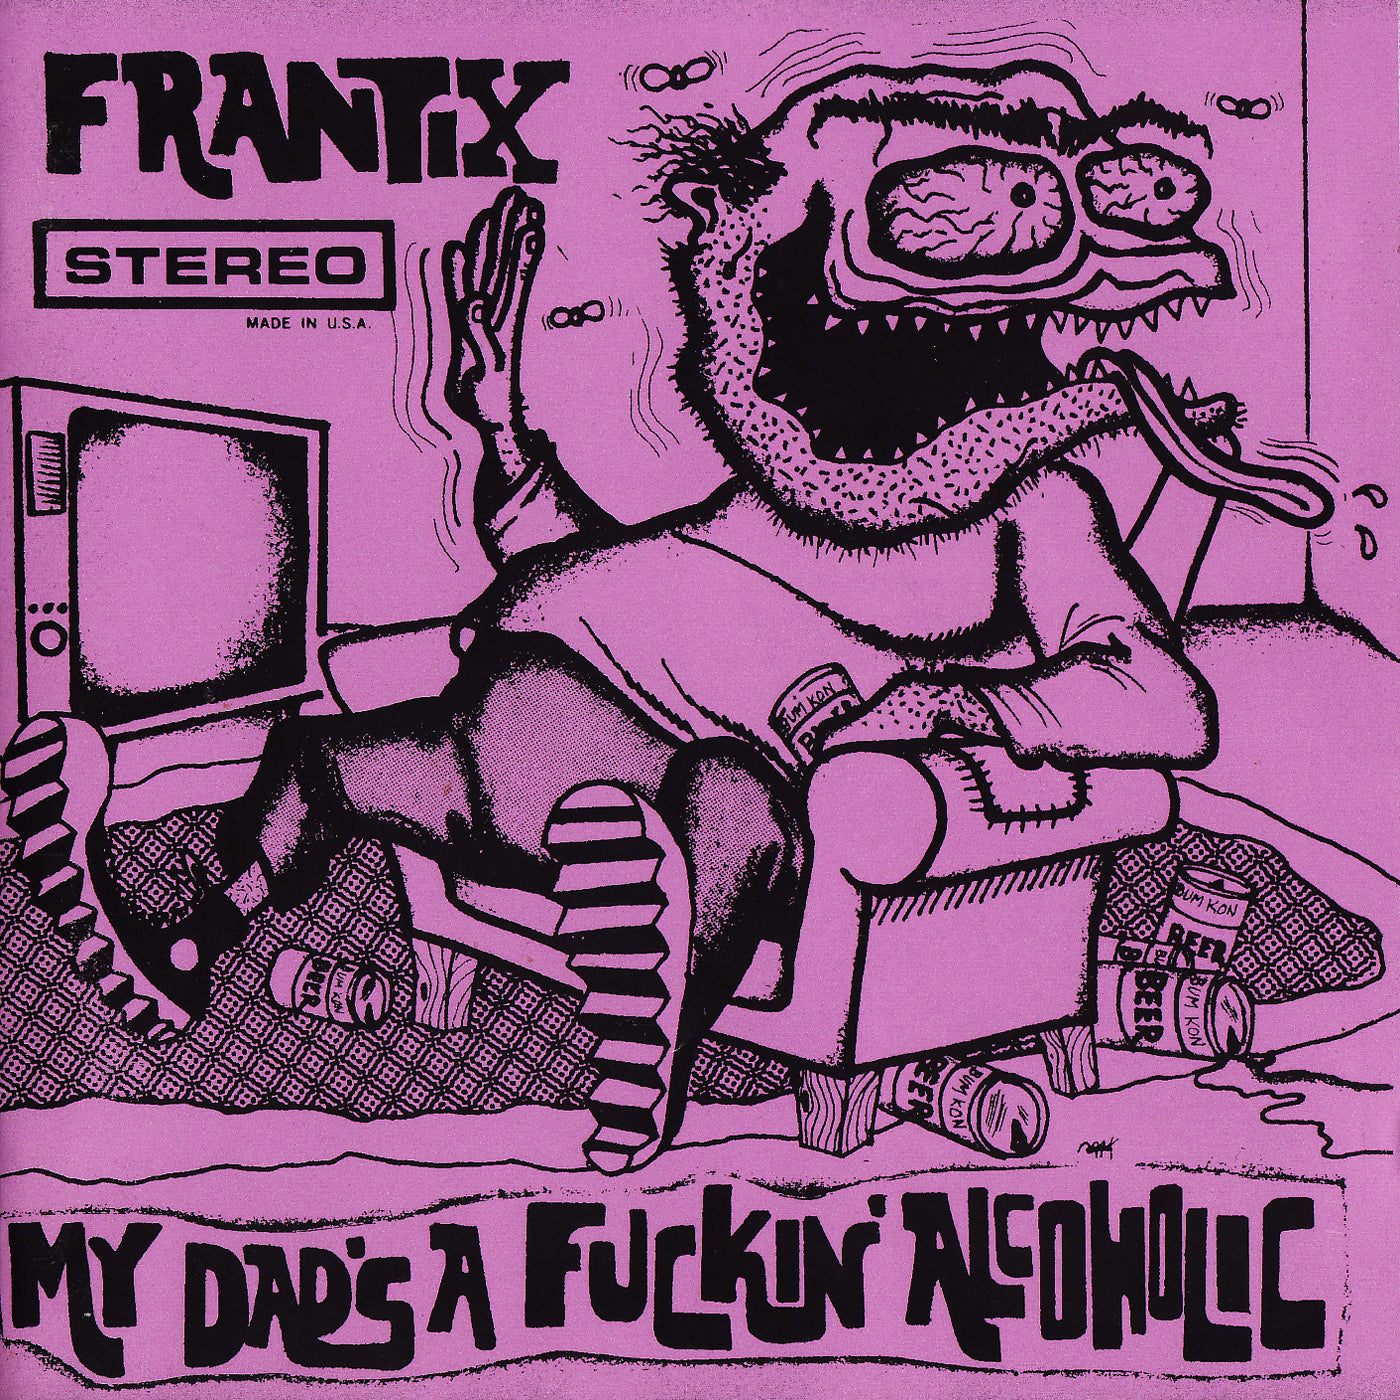 DECEMBER FEATURED ALBUM: FRANTIX